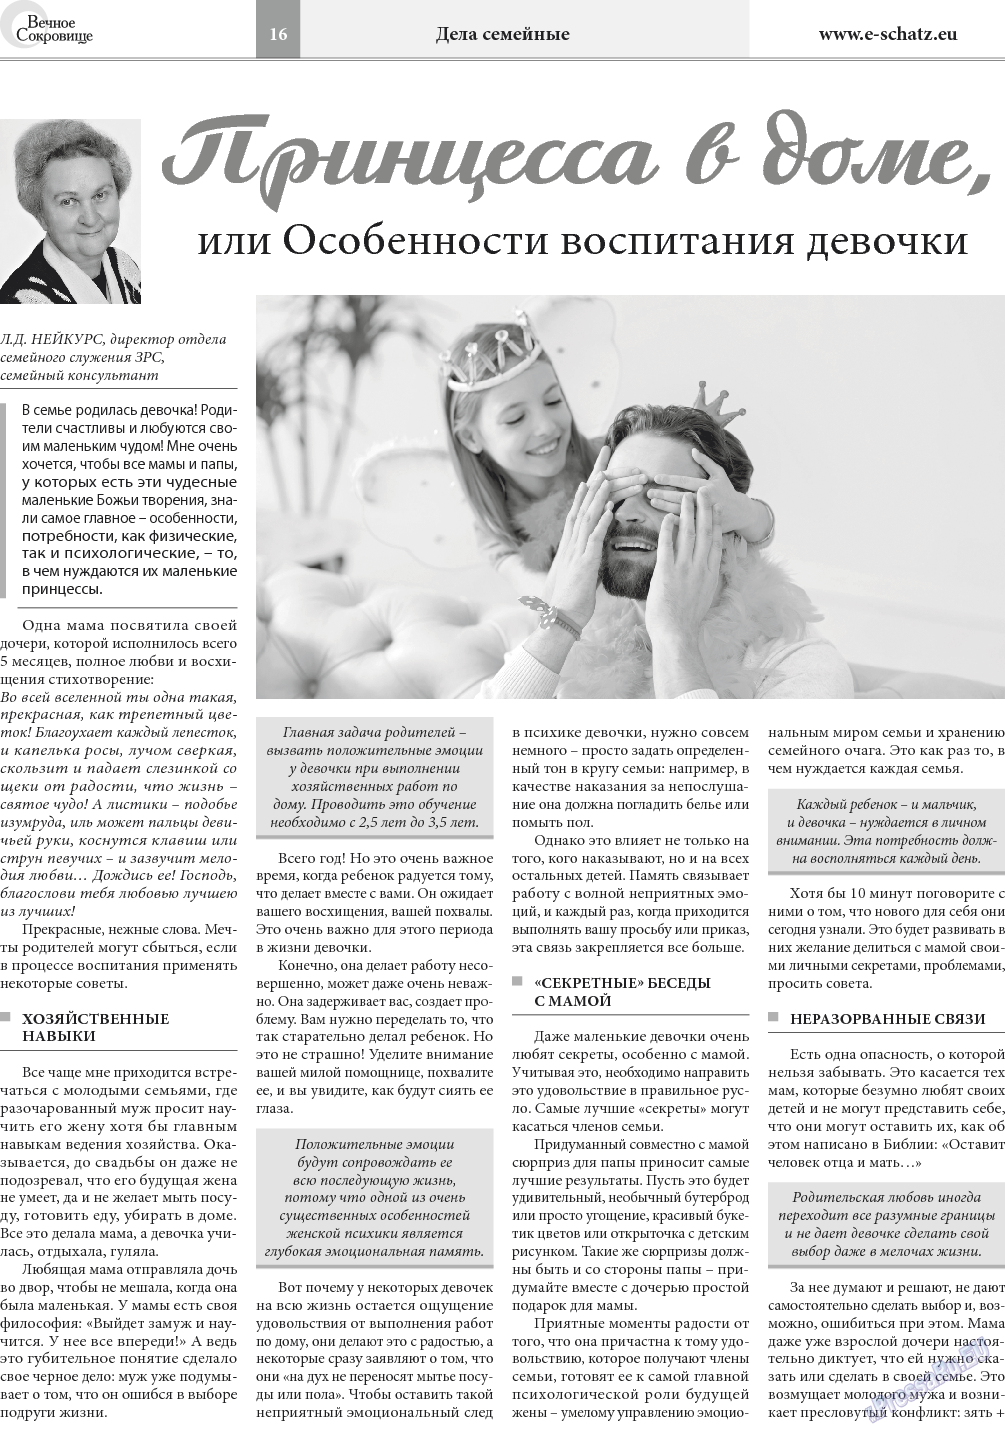 Вечное сокровище, газета. 2018 №1 стр.16